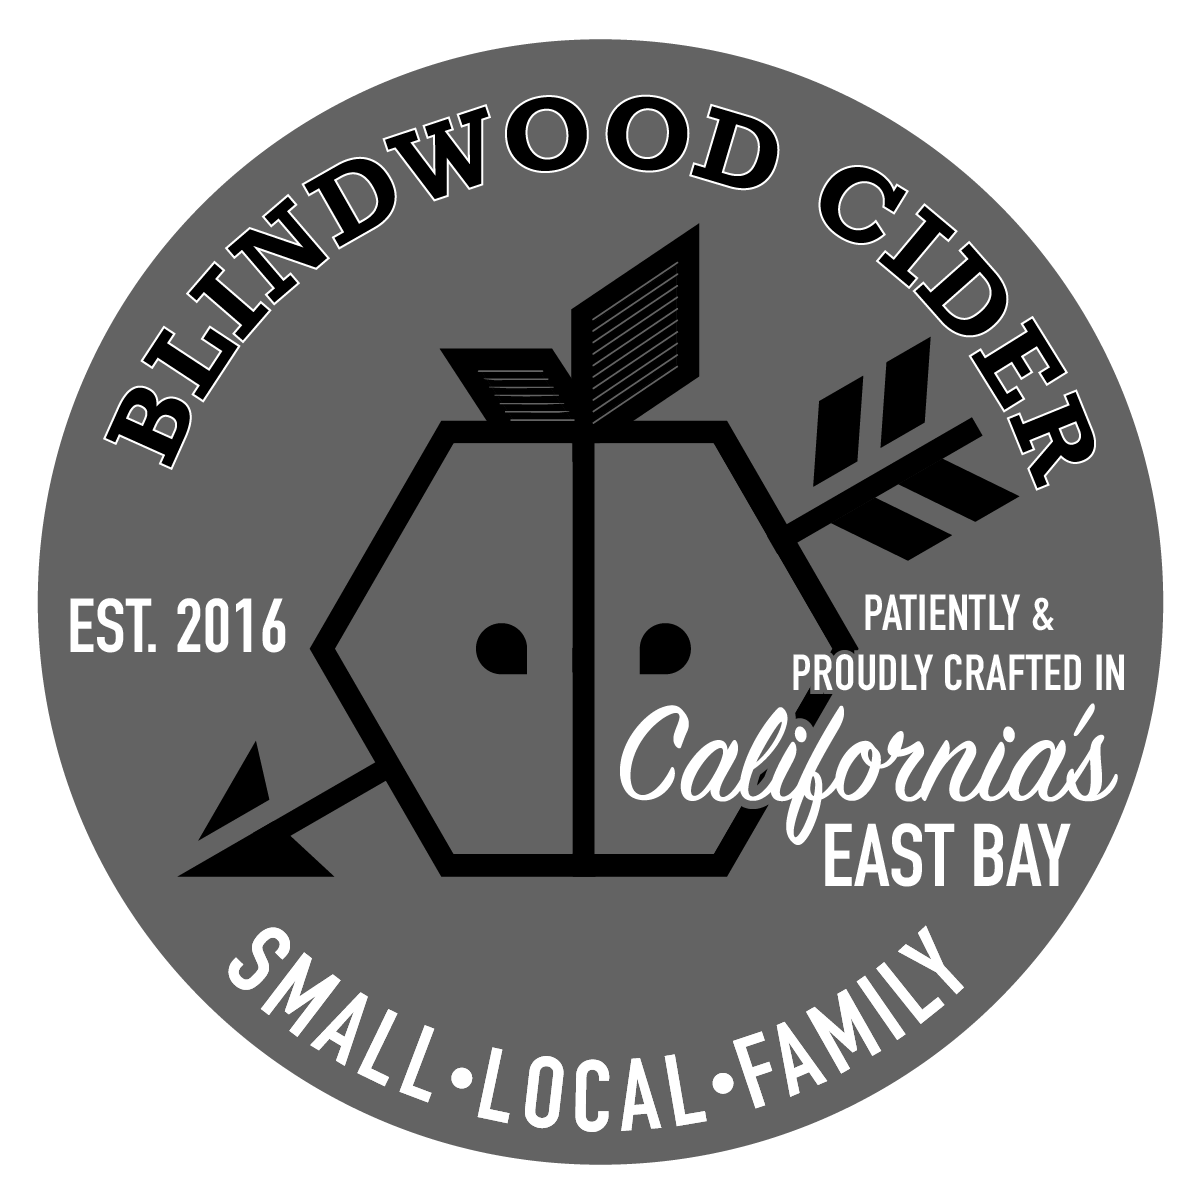 Blindwood Cider